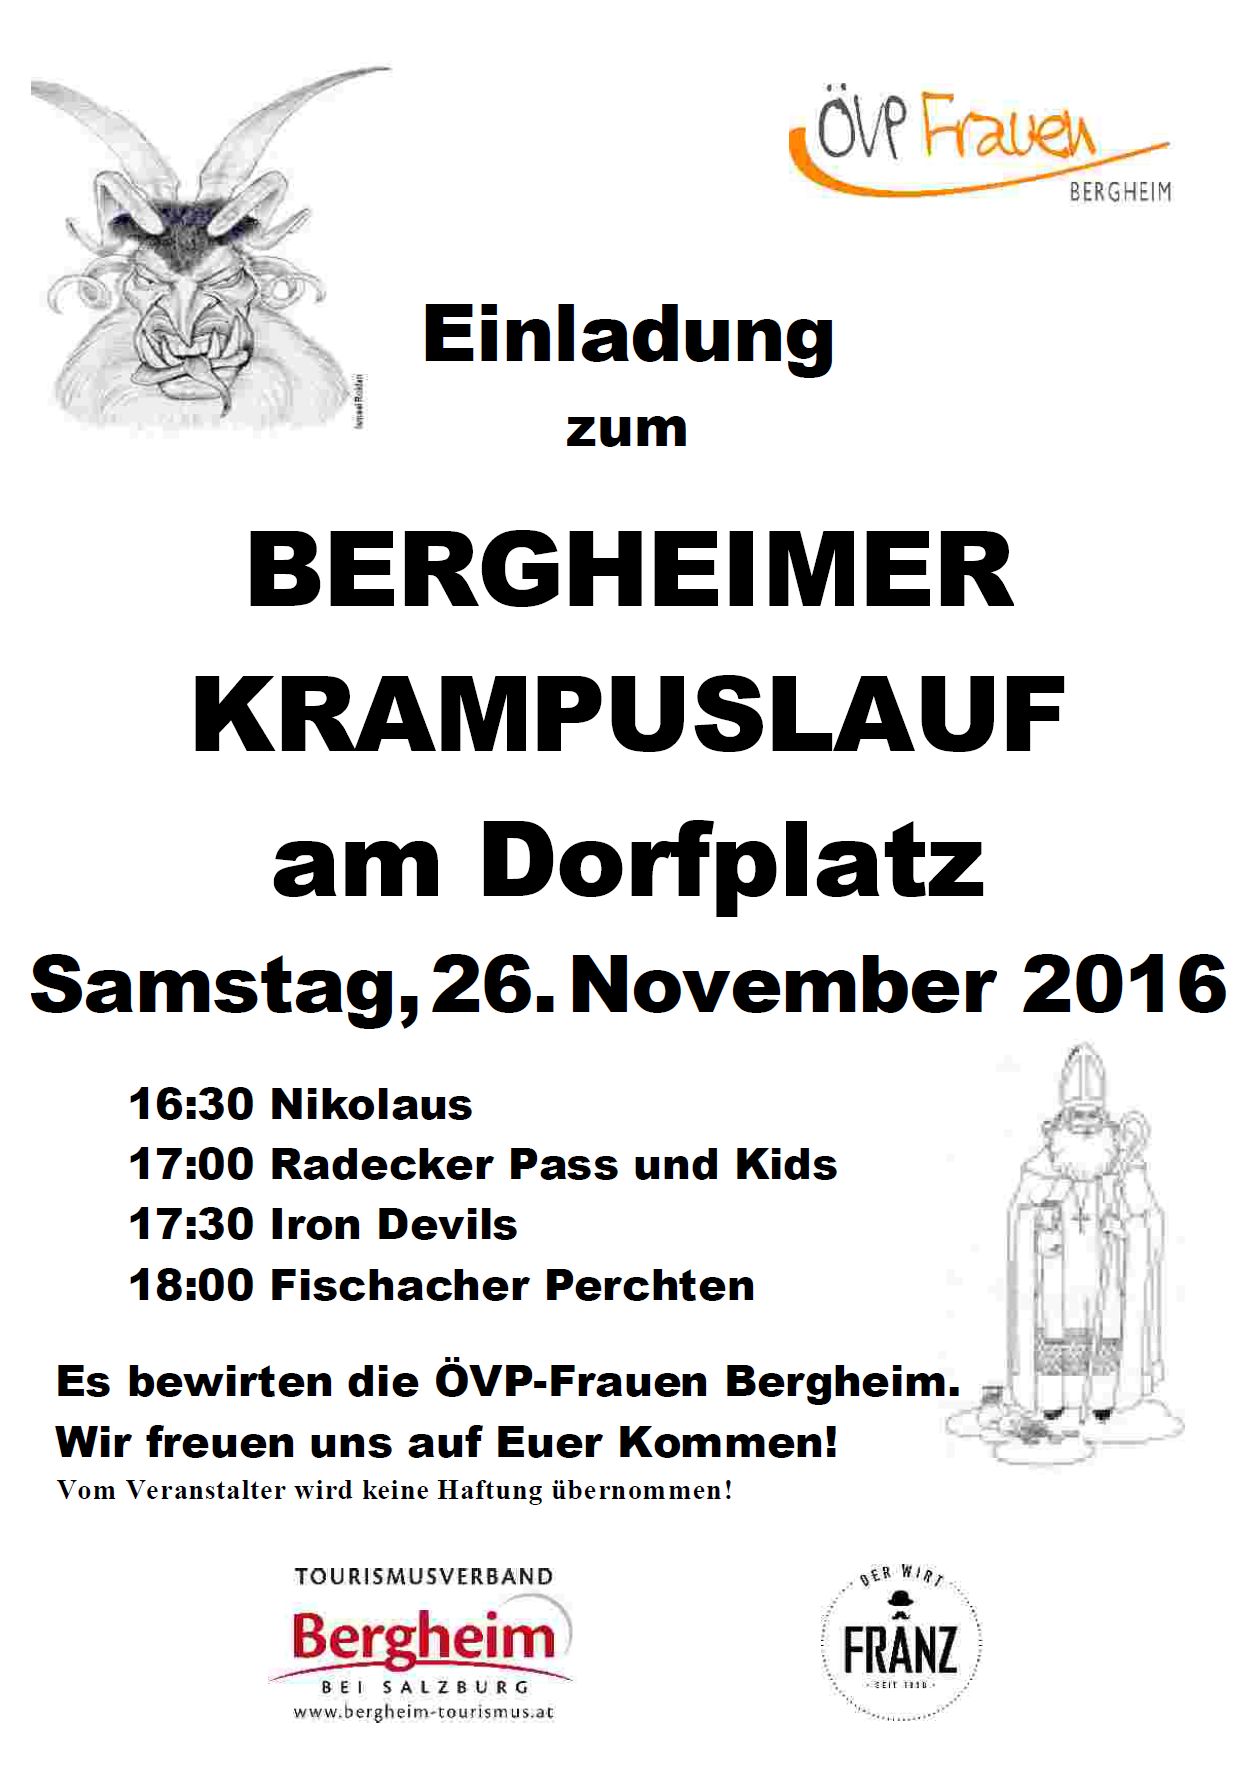 You are currently viewing Krampuslauf 2016 am Dorfplatz in Bergheim